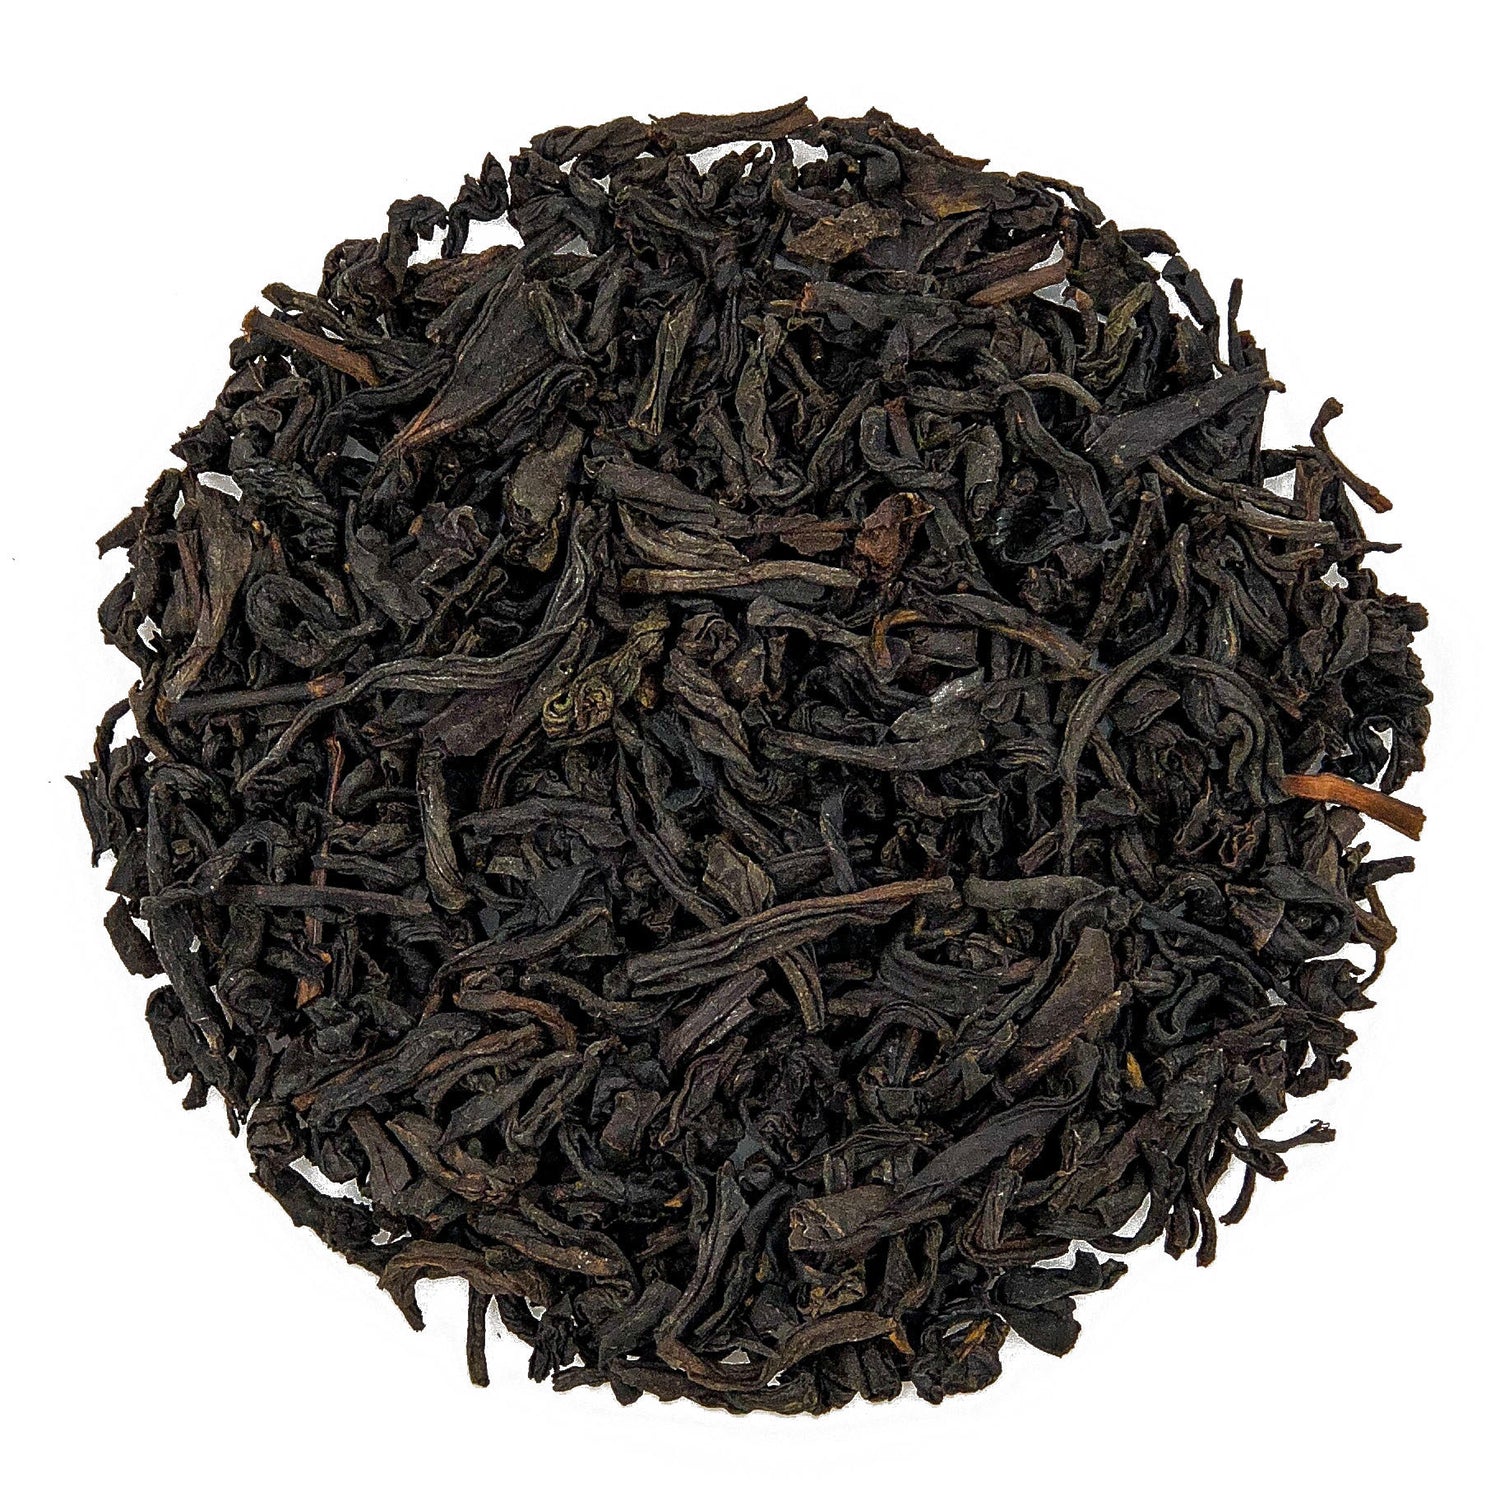 Lapsang Souchong tea Ceai negru pentru un ceai sau mai multe ceaiuri mereu noi pentru ca sunt sanatoase